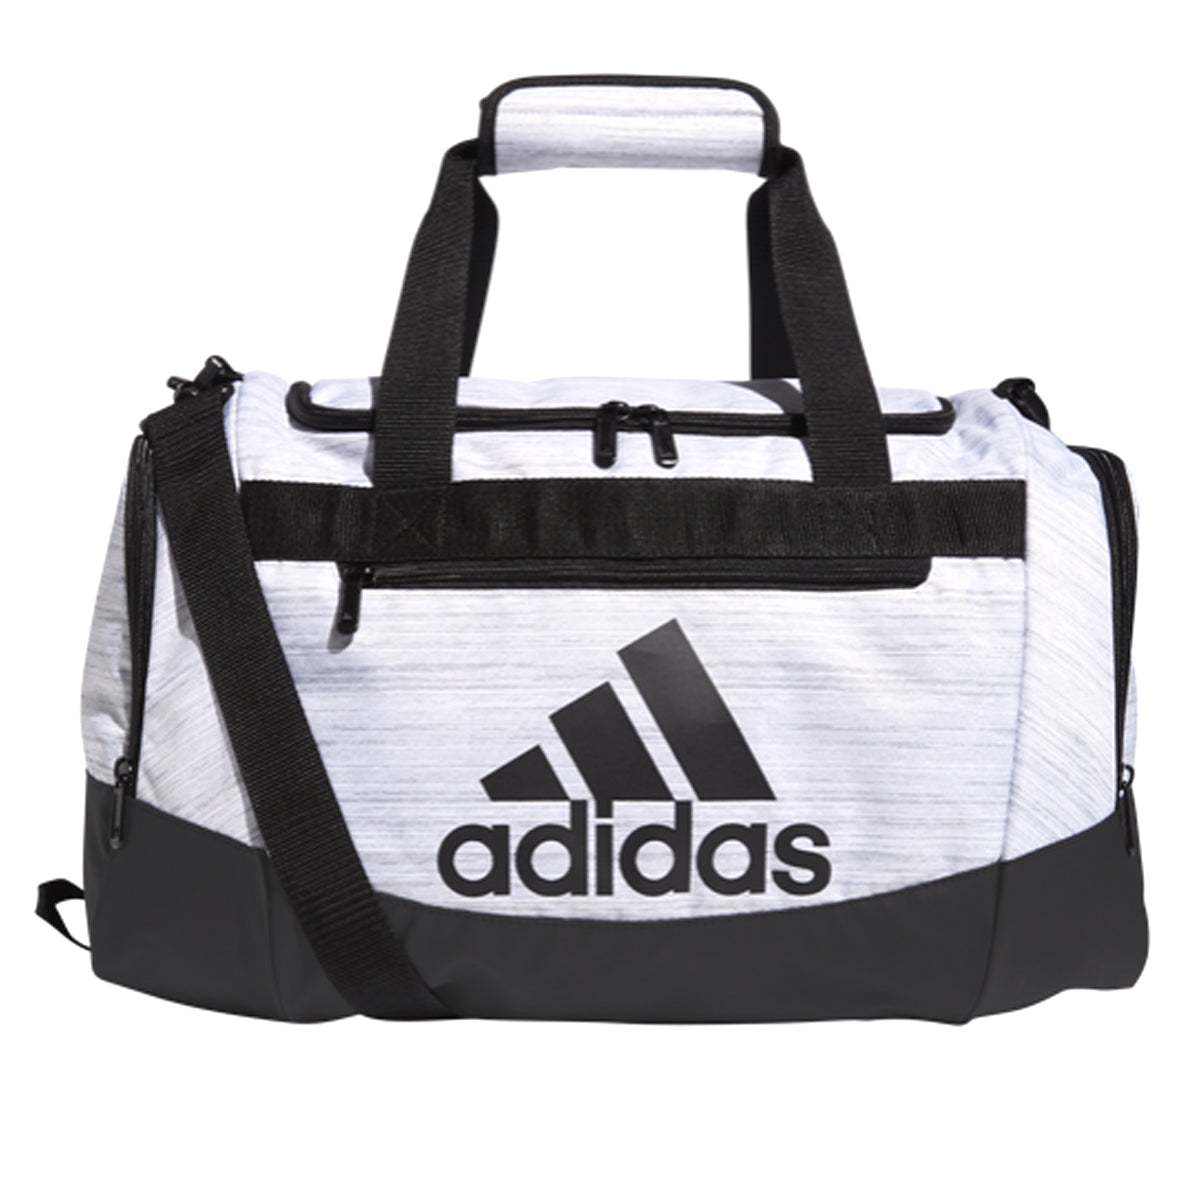 adidas Defender IV Duffel Bag Small | 5151718 Bags Adidas OSFA Two Tone White/Black 